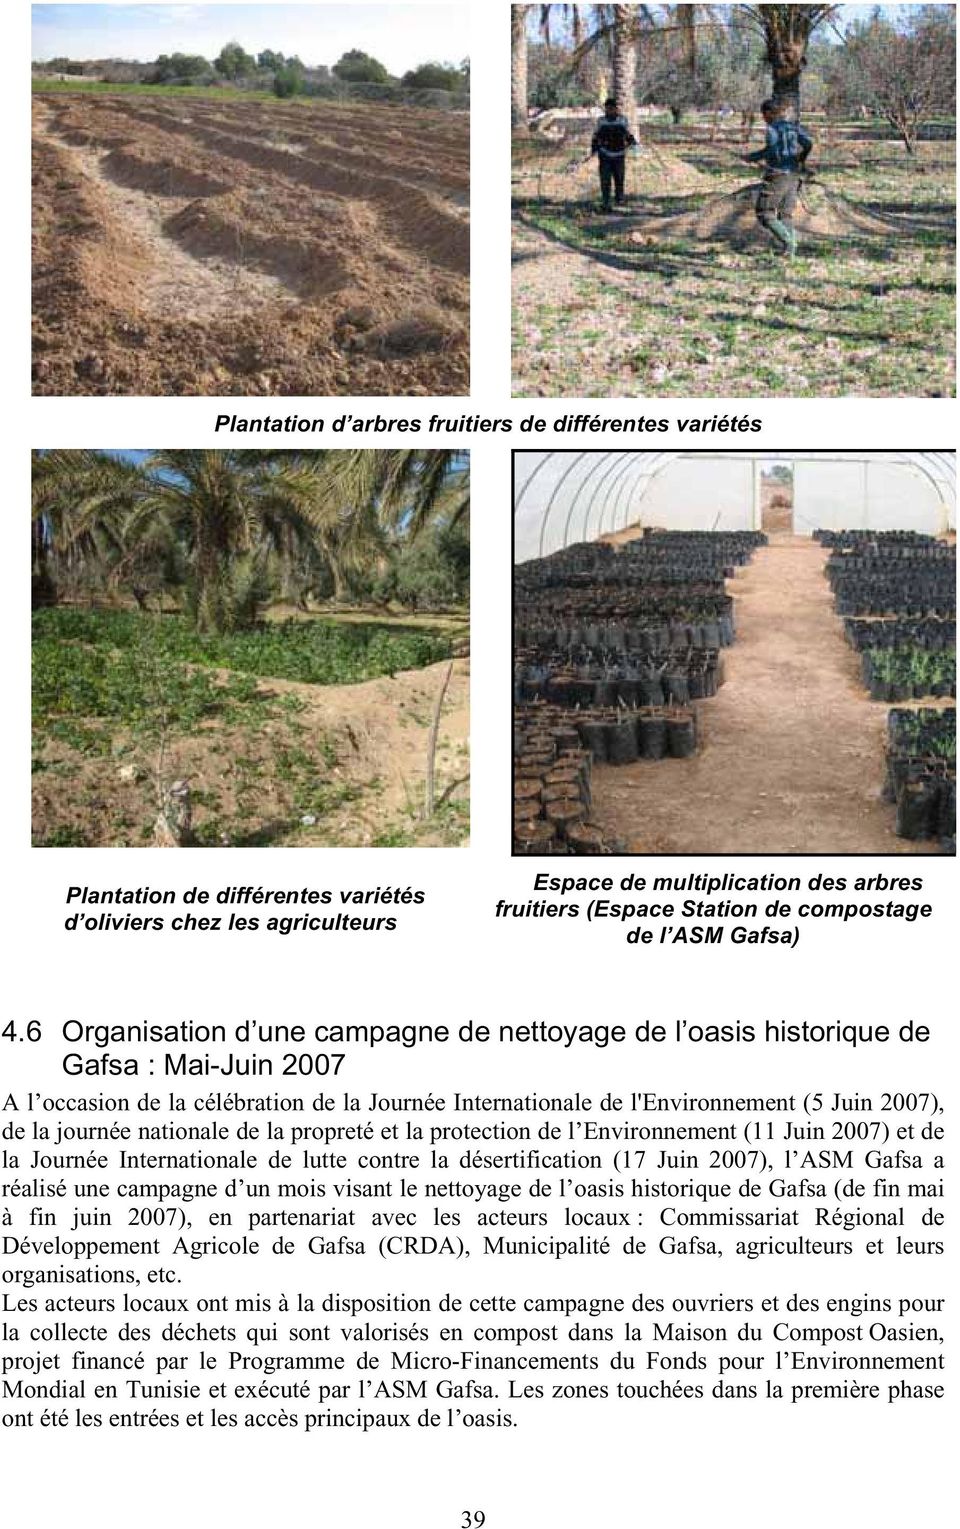 6 Organisation d une campagne de nettoyage de l oasis historique de Gafsa : Mai-Juin 2007 A l occasion de la célébration de la Journée Internationale de l'environnement (5 Juin 2007), de la journée